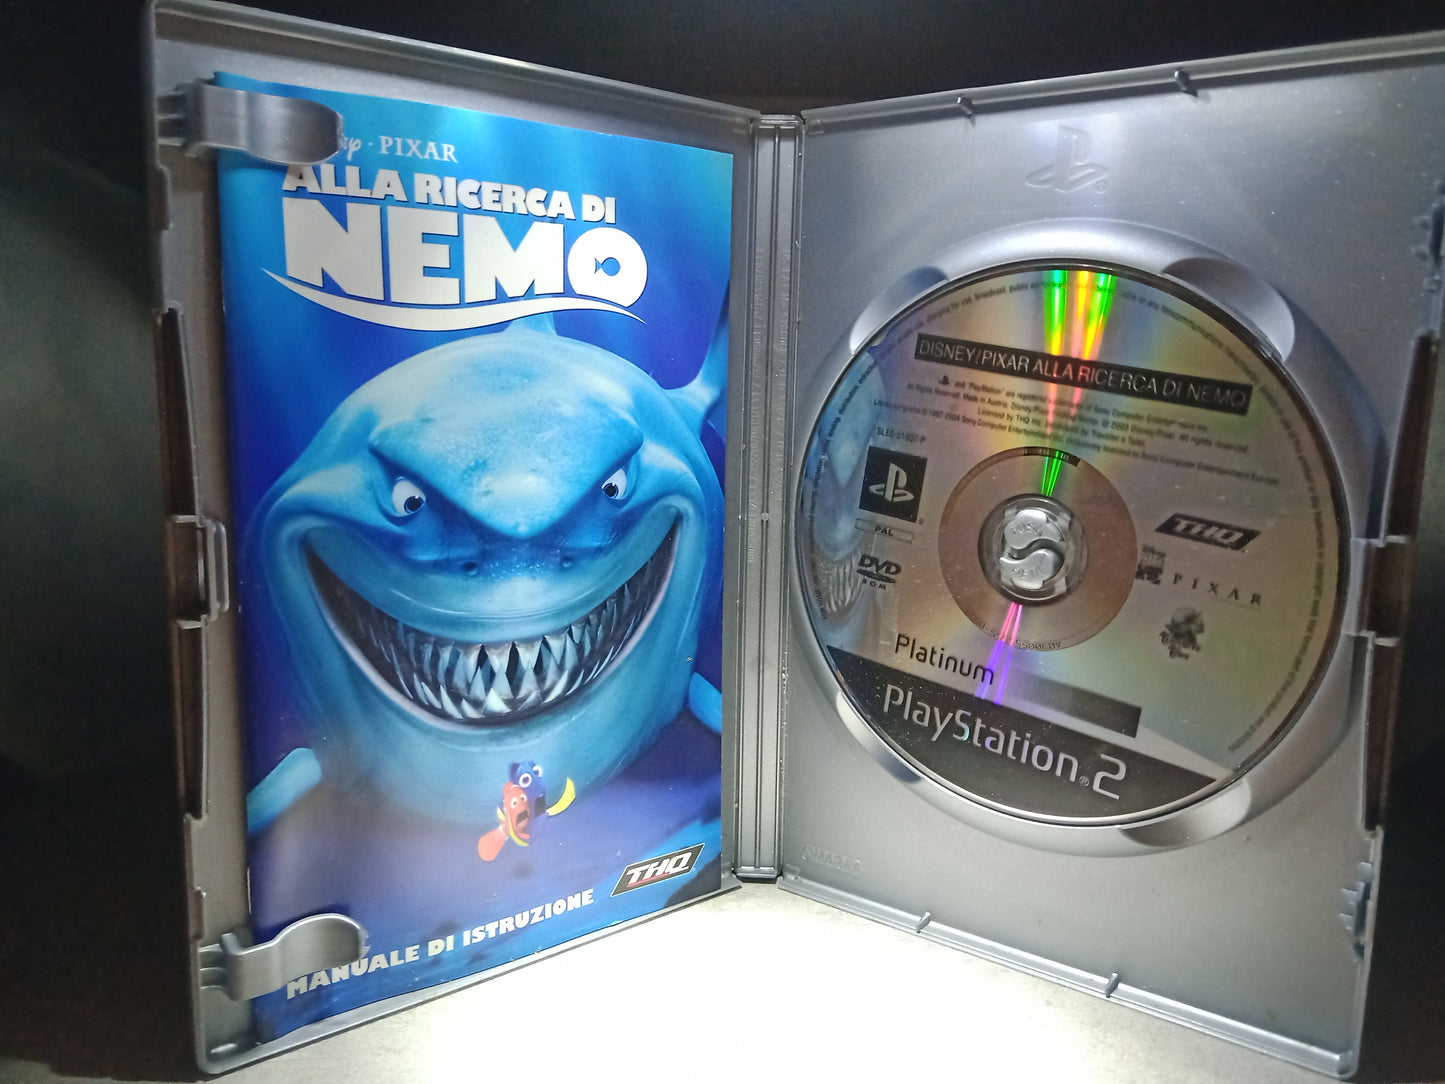 Finding Nemo (platinum)